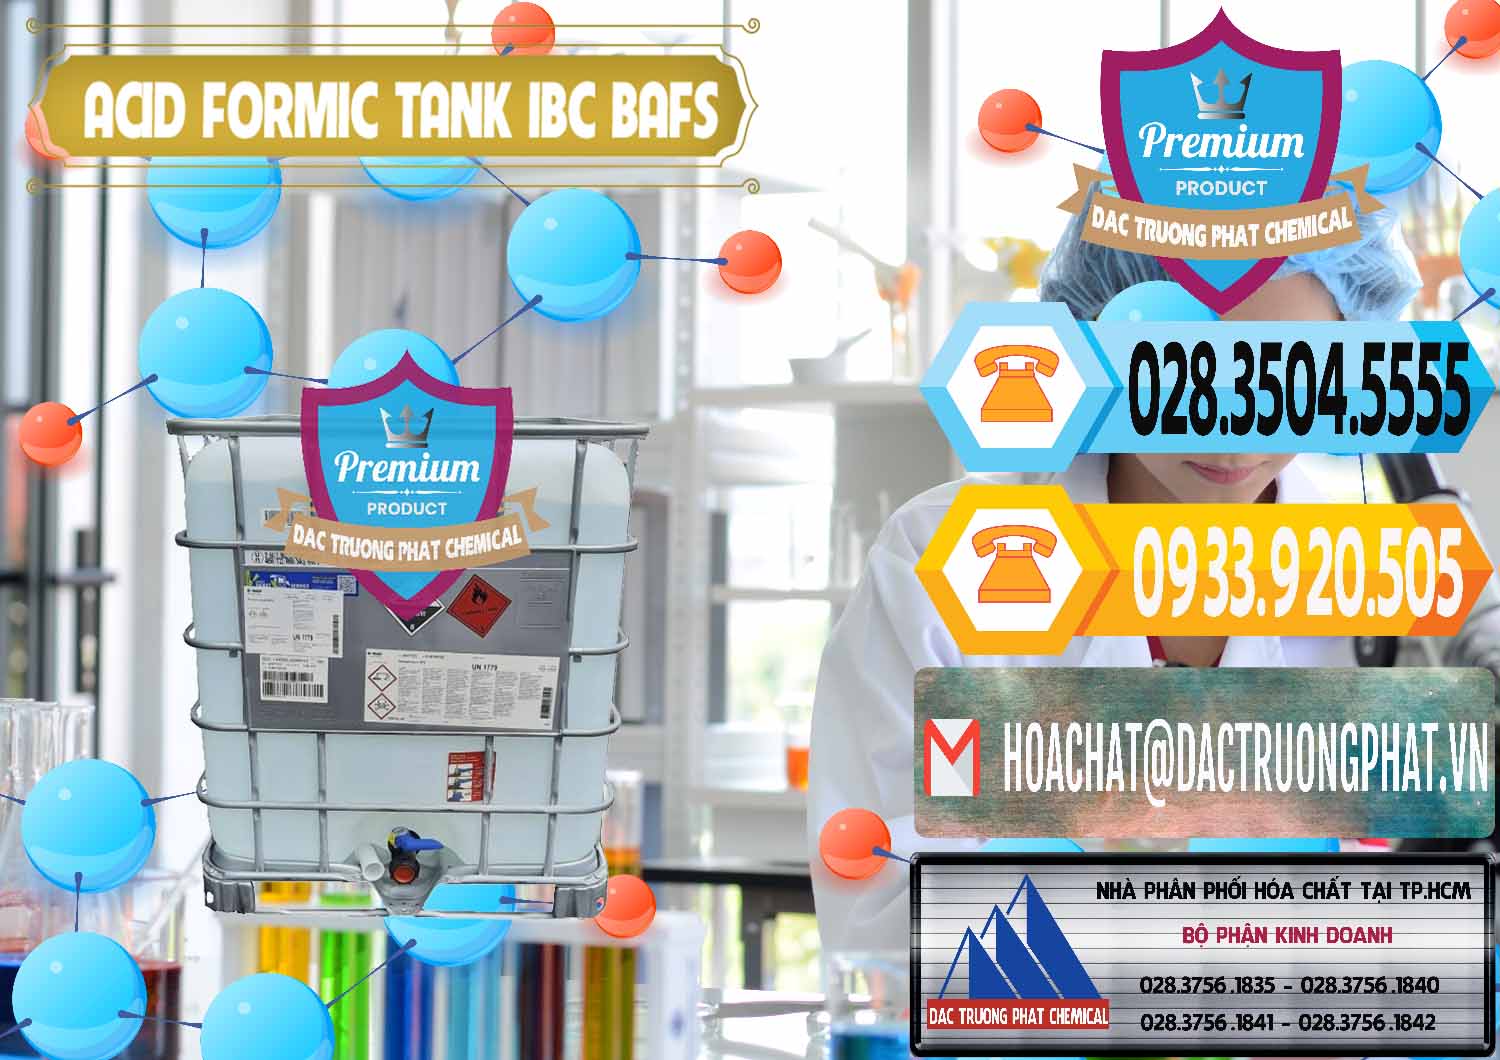 Công ty chuyên cung cấp & bán Acid Formic - Axit Formic Tank - Bồn IBC BASF Đức - 0366 - Chuyên cung cấp - nhập khẩu hóa chất tại TP.HCM - hoachattayrua.net